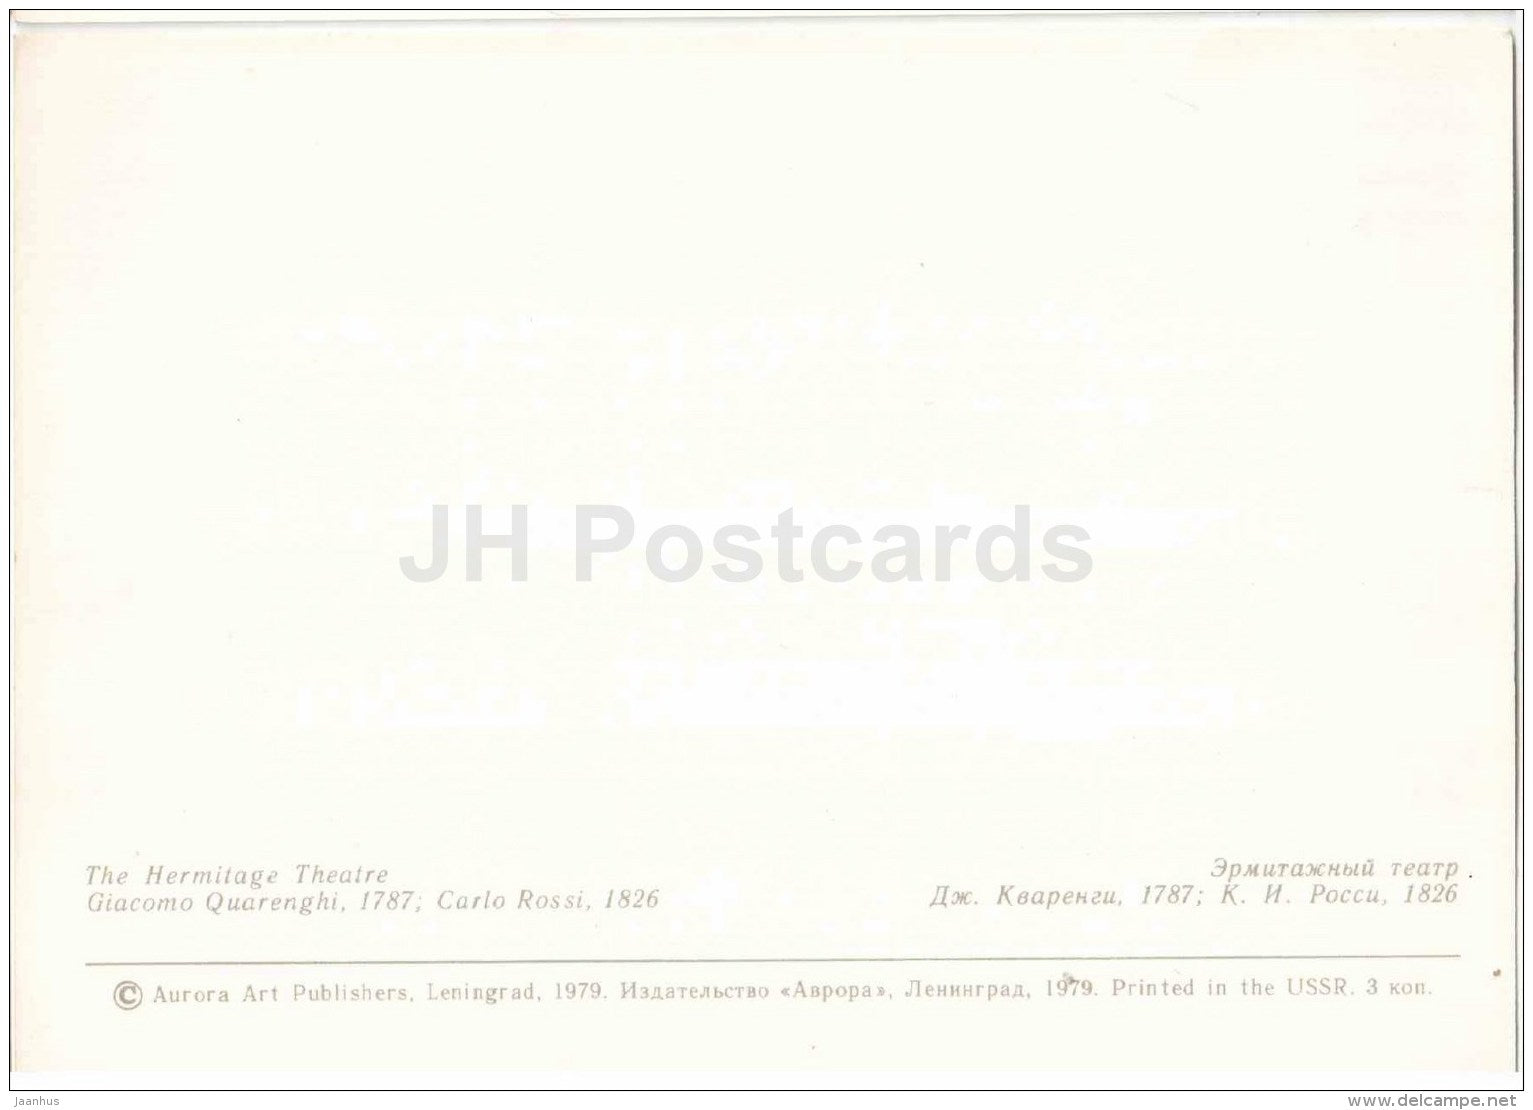 The Hermitage Theatre - Leningrad - St. Petersburg - 1979 - Russia USSR - unused - JH Postcards